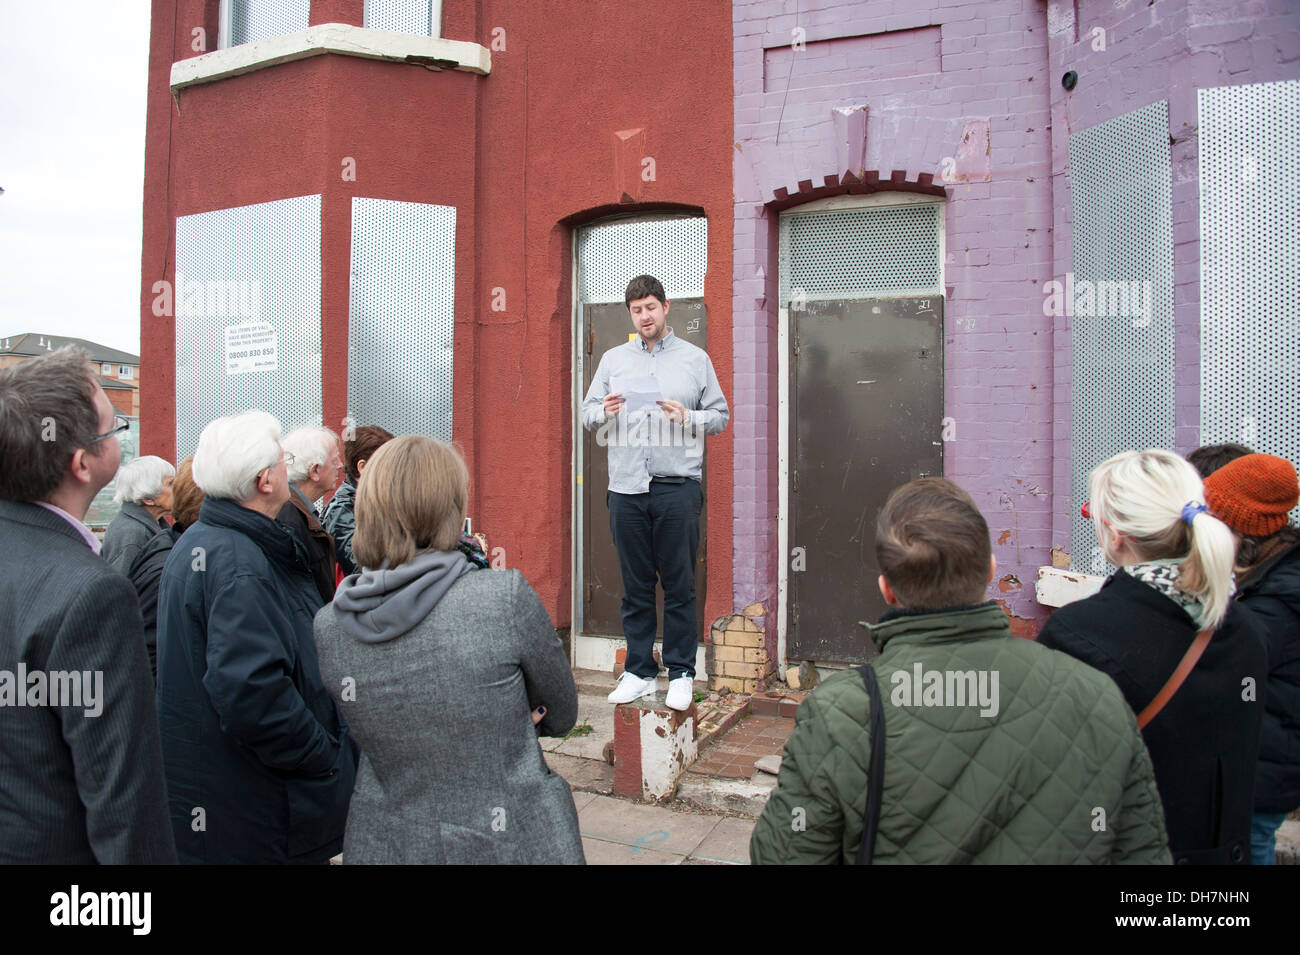 Altavoz público hablando a los espectadores en casas abandonadas Foto de stock